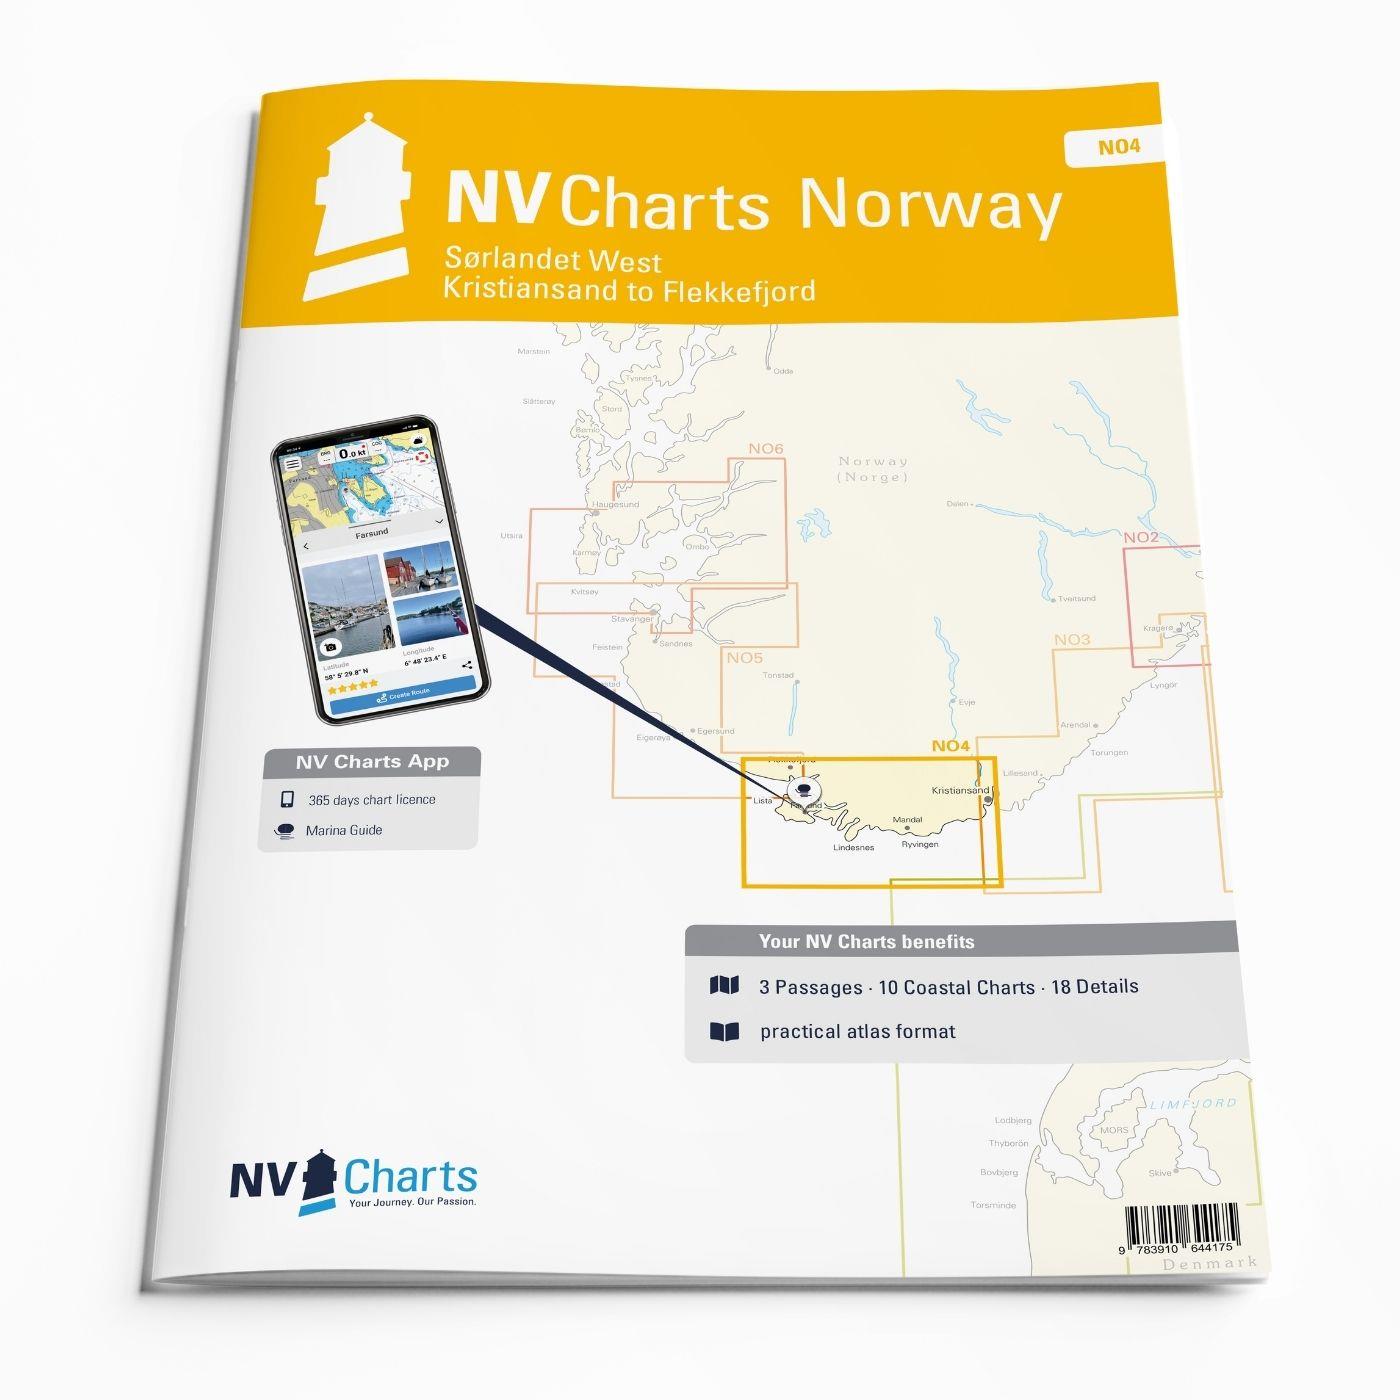 NV Charts Norway NO4 Sørlandet Vest - Flekkefjord til Kristiansand